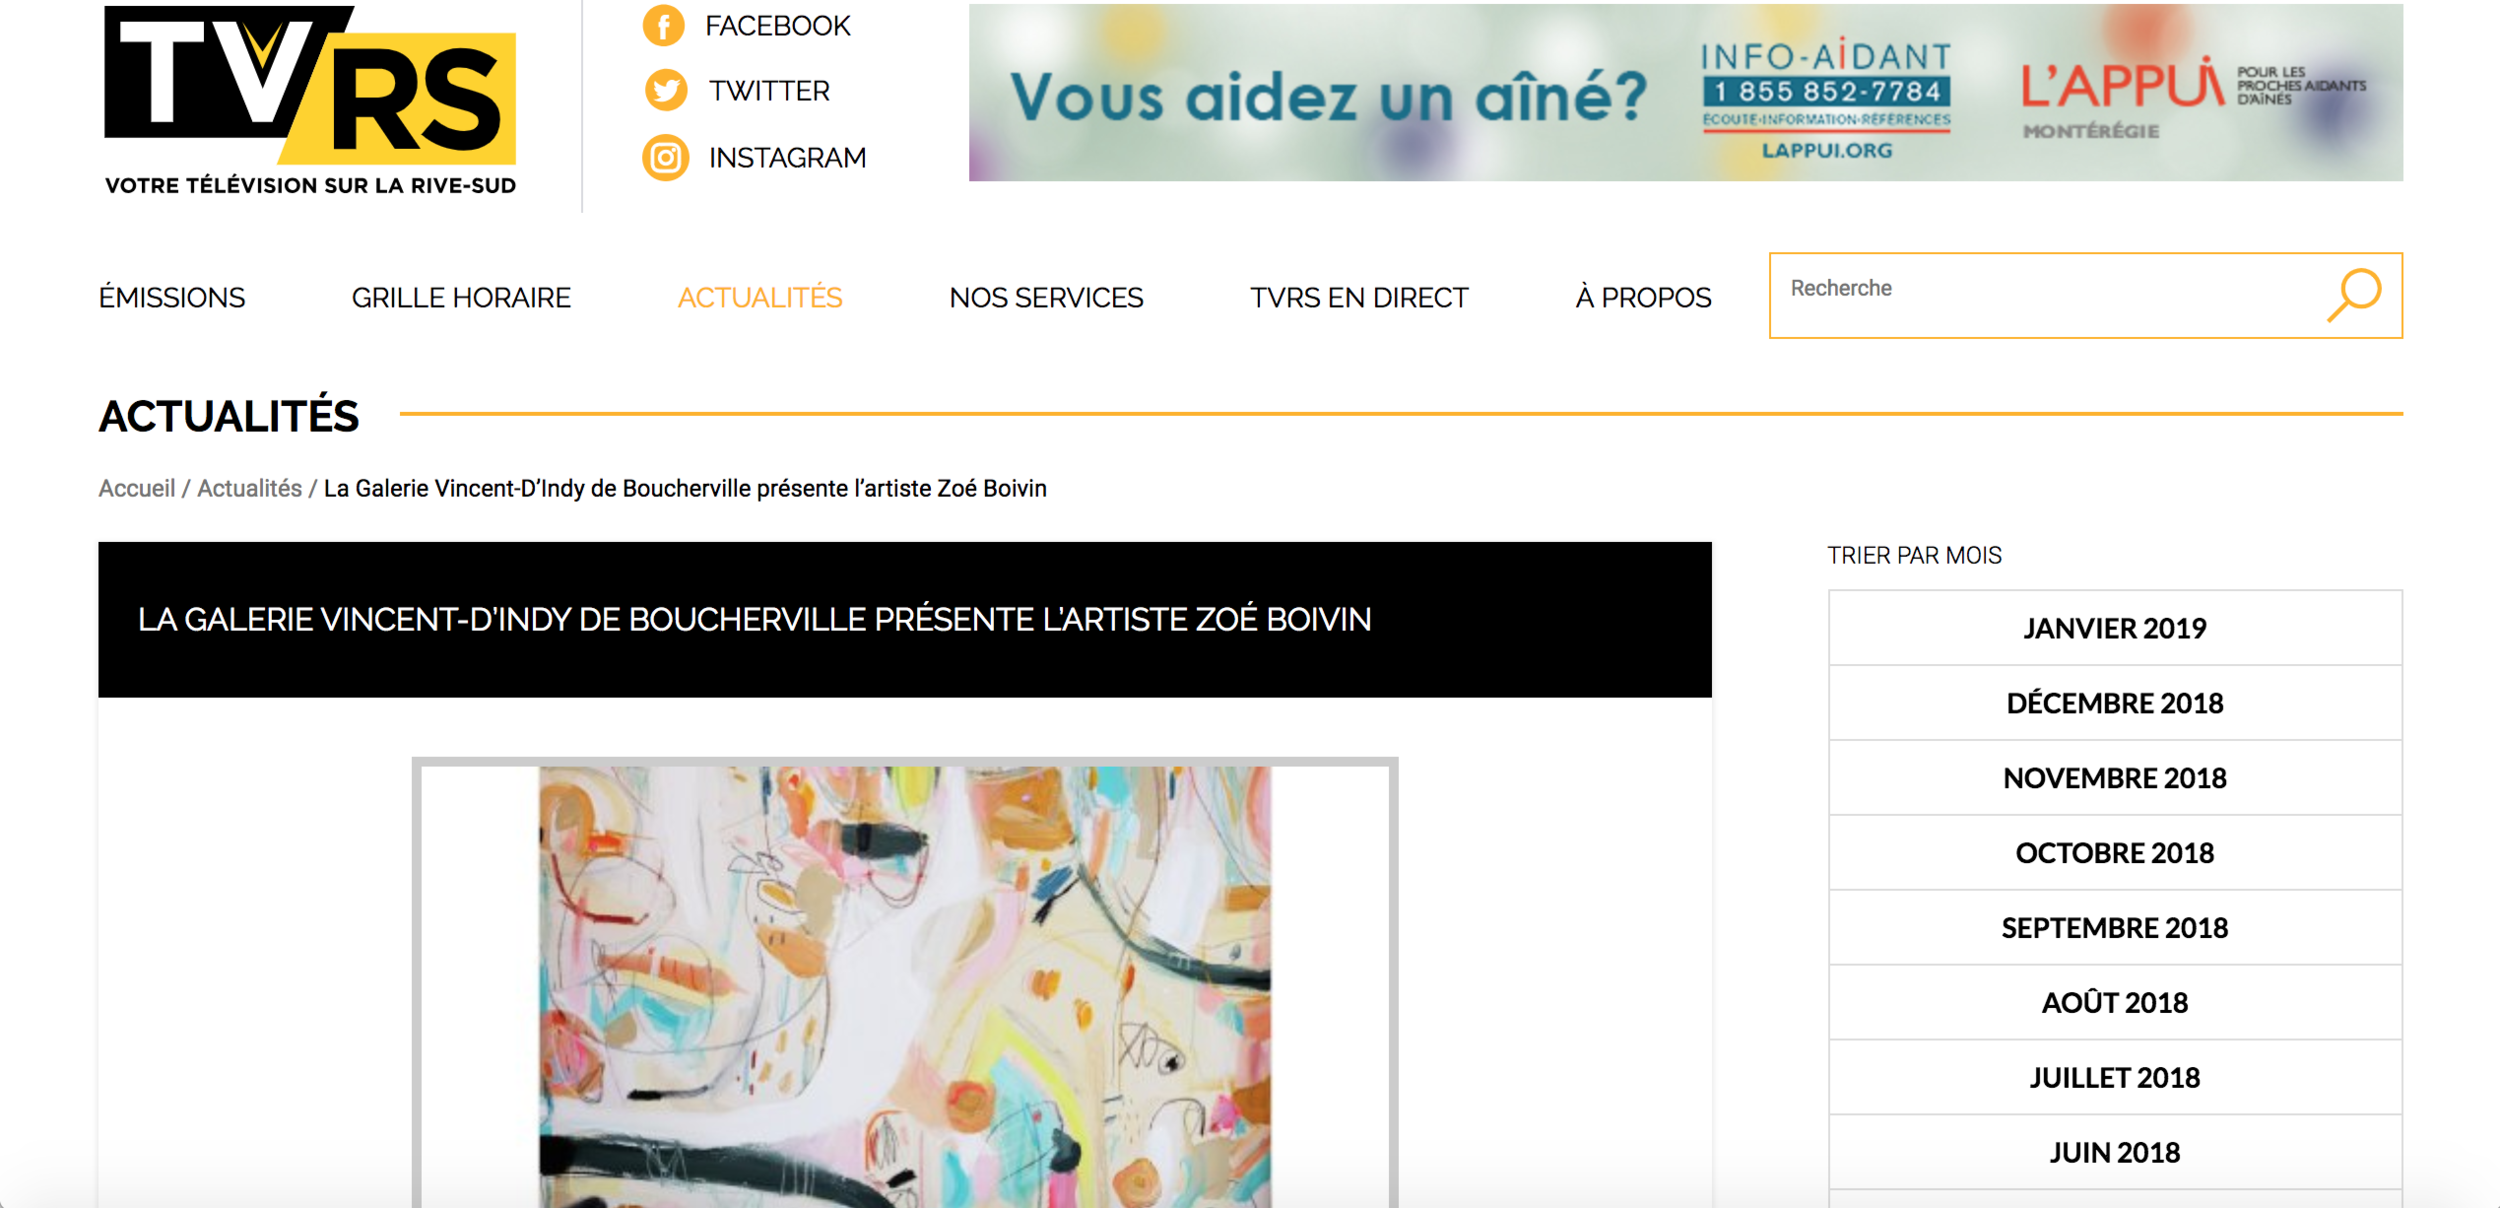  La Galerie Vincent D’Indy de Boucherville présente l’artiste Zoé Boivin. Rosanne Lévesque.  TVRS , 18 août 2018.   L’article complet  ici.  